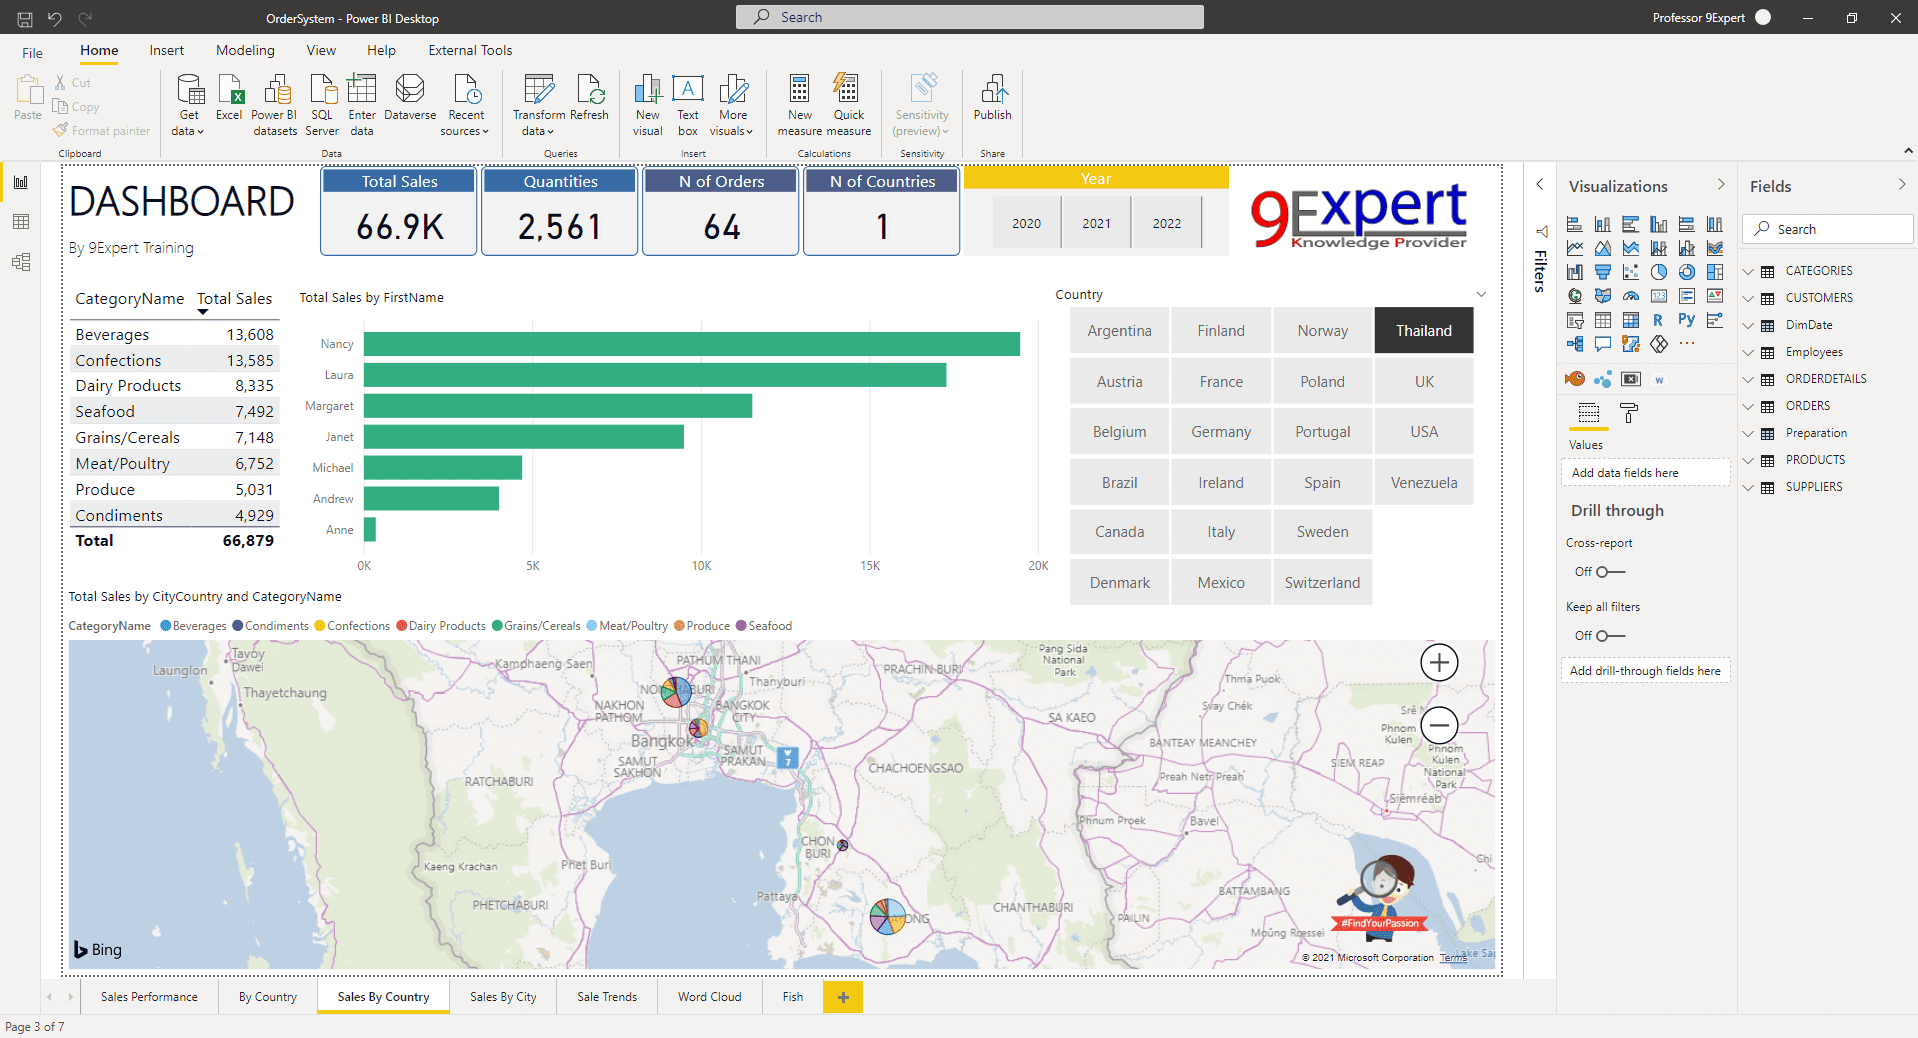 โปรแกรม Power BI Desktop มุมมอง Report View ทั้ง แผนที่ และตาราง พร้อม Visualization ต่าง ๆ